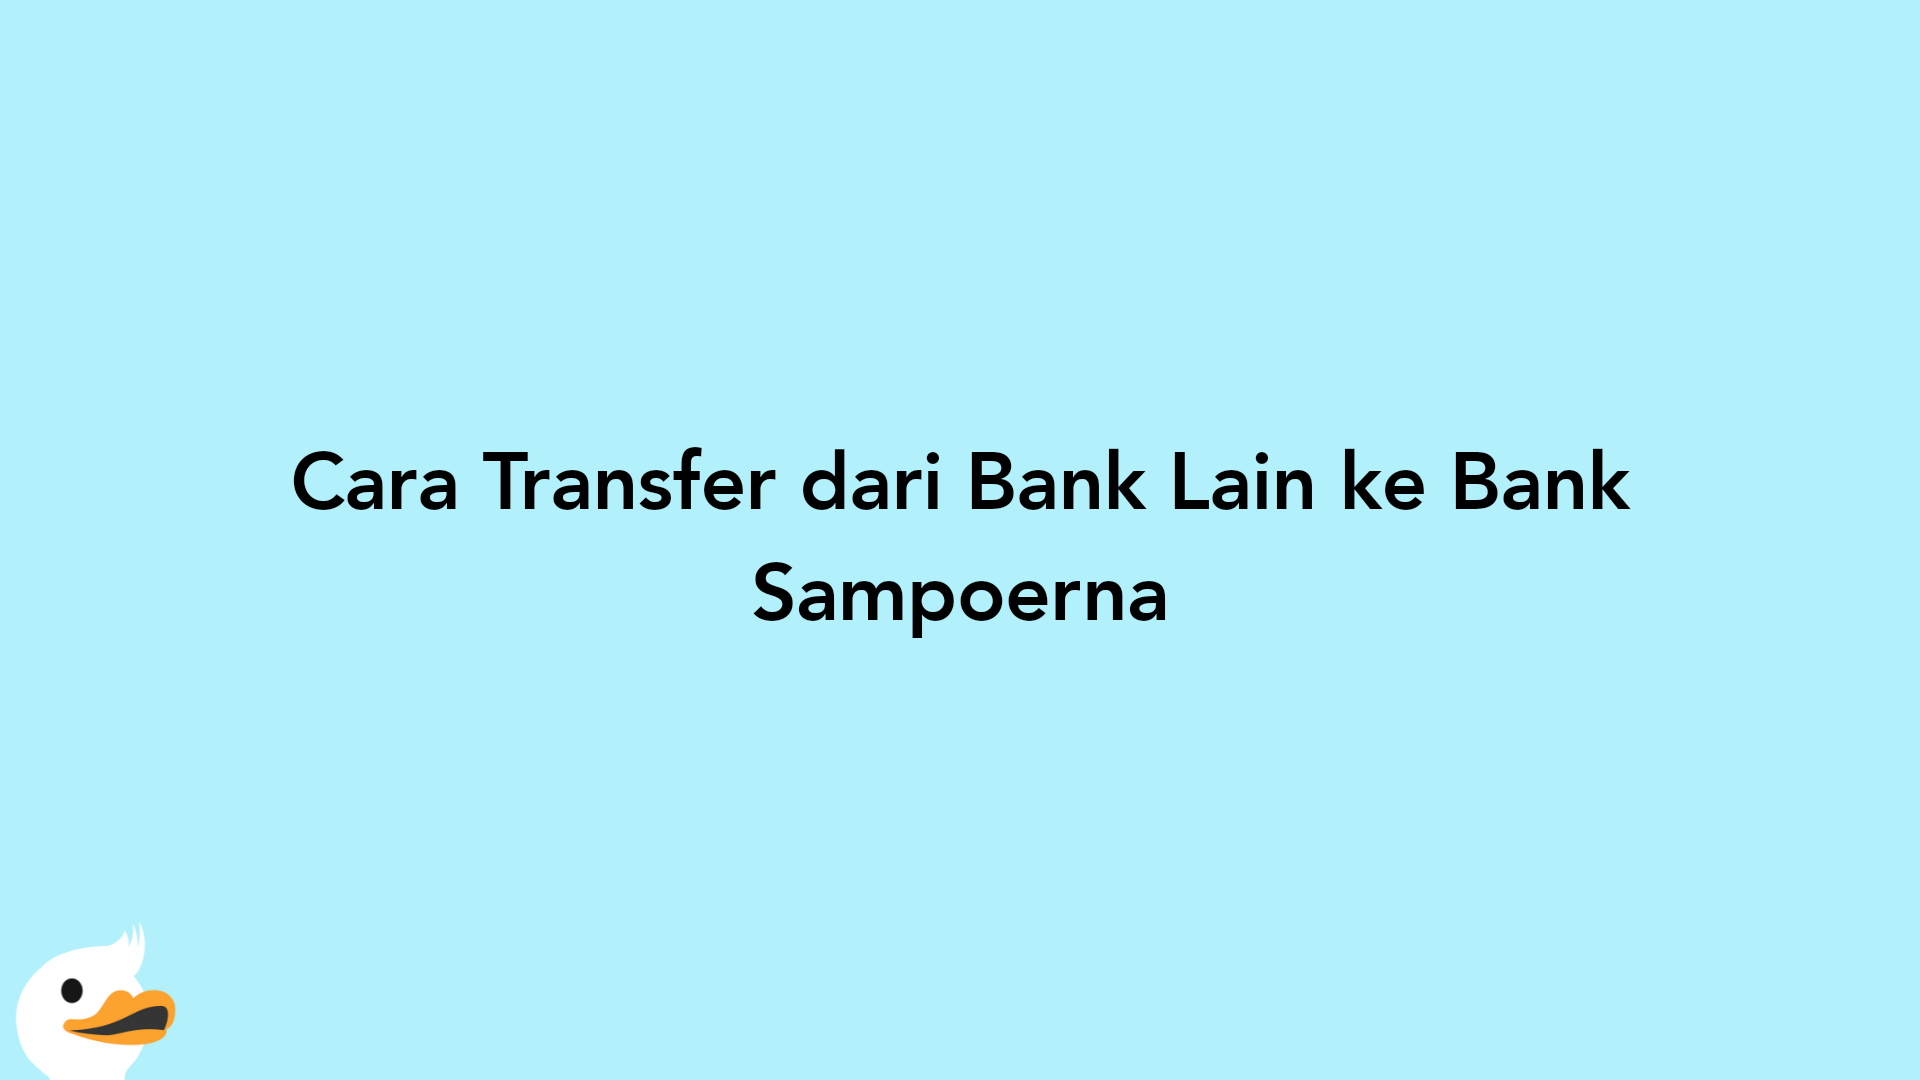 Cara Transfer dari Bank Lain ke Bank Sampoerna